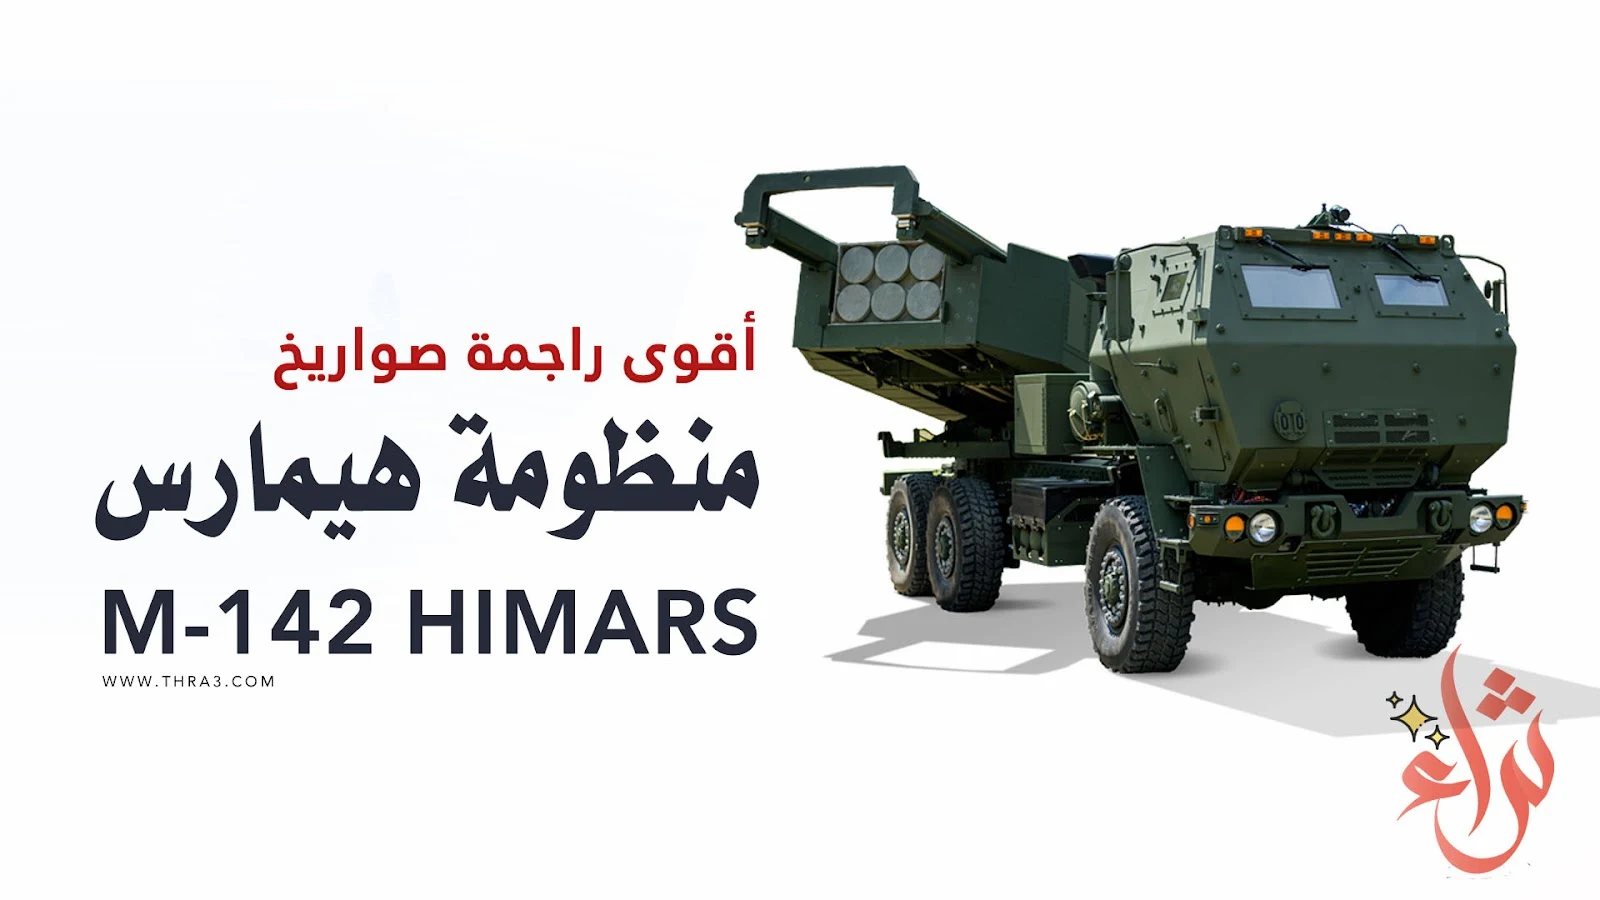 منظومة هيمارس (HIMARS) الصاروخية